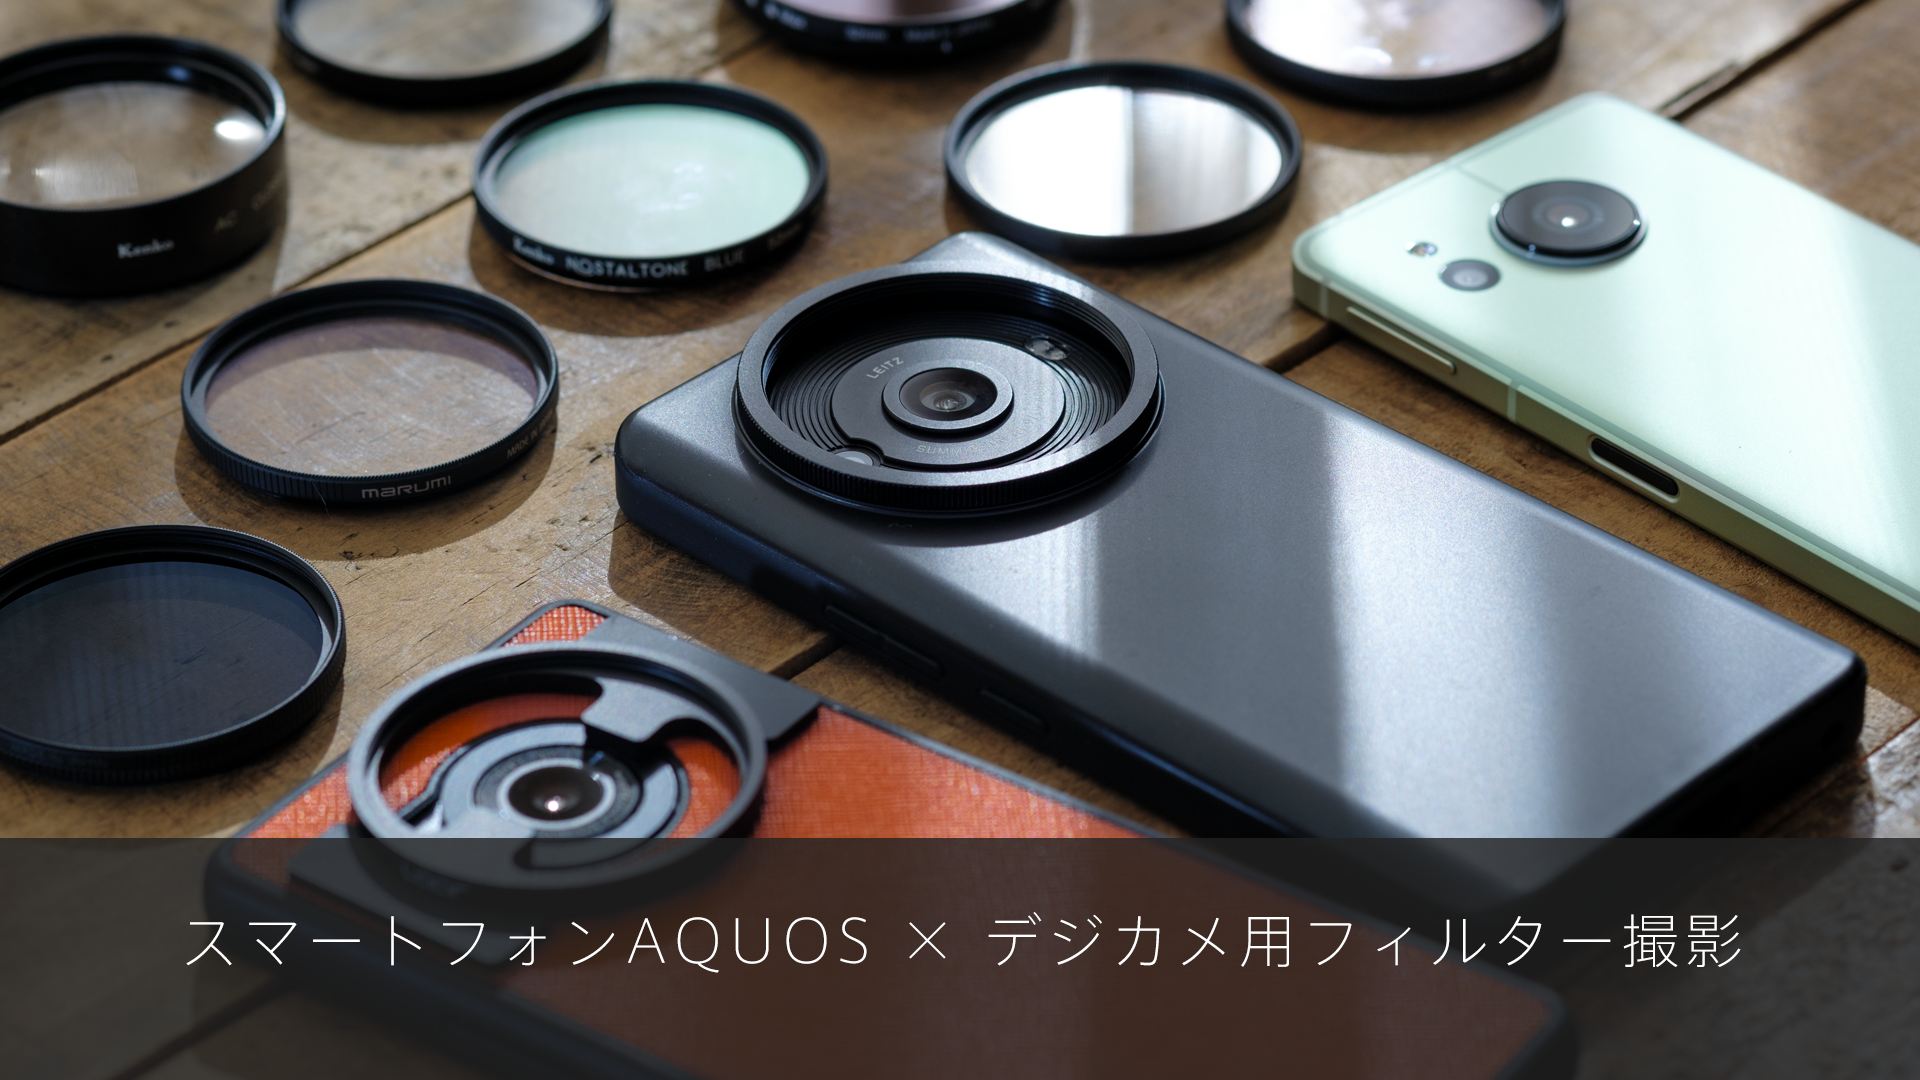 スマートフォン AQUOS × デジカメ用フィルター撮影